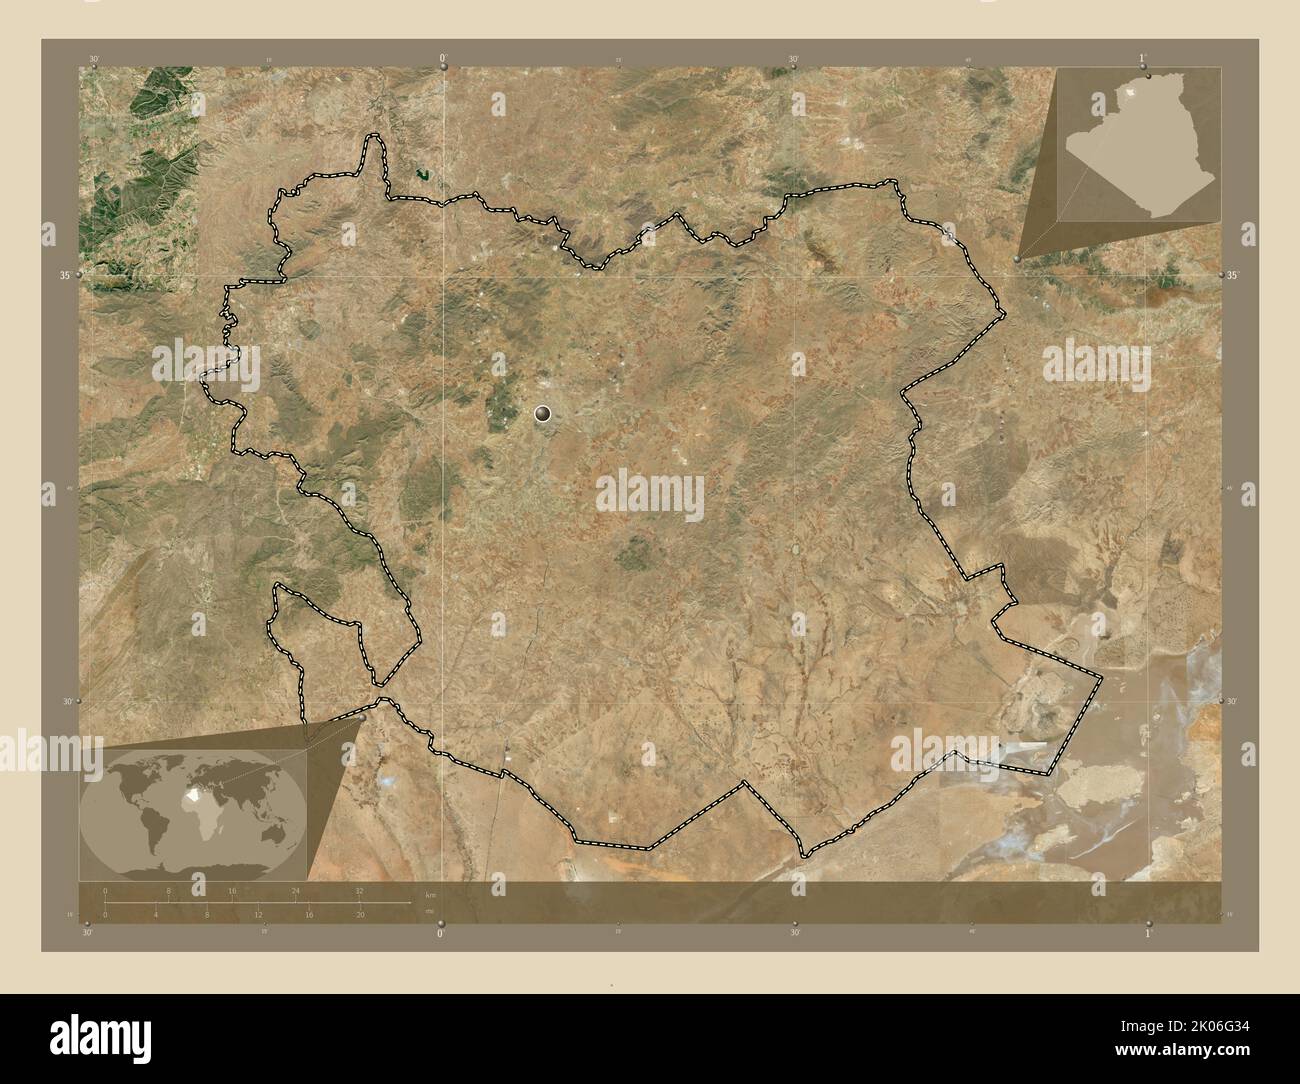 Saida, province d'Algérie. Carte satellite haute résolution. Cartes d'emplacement auxiliaire d'angle Banque D'Images